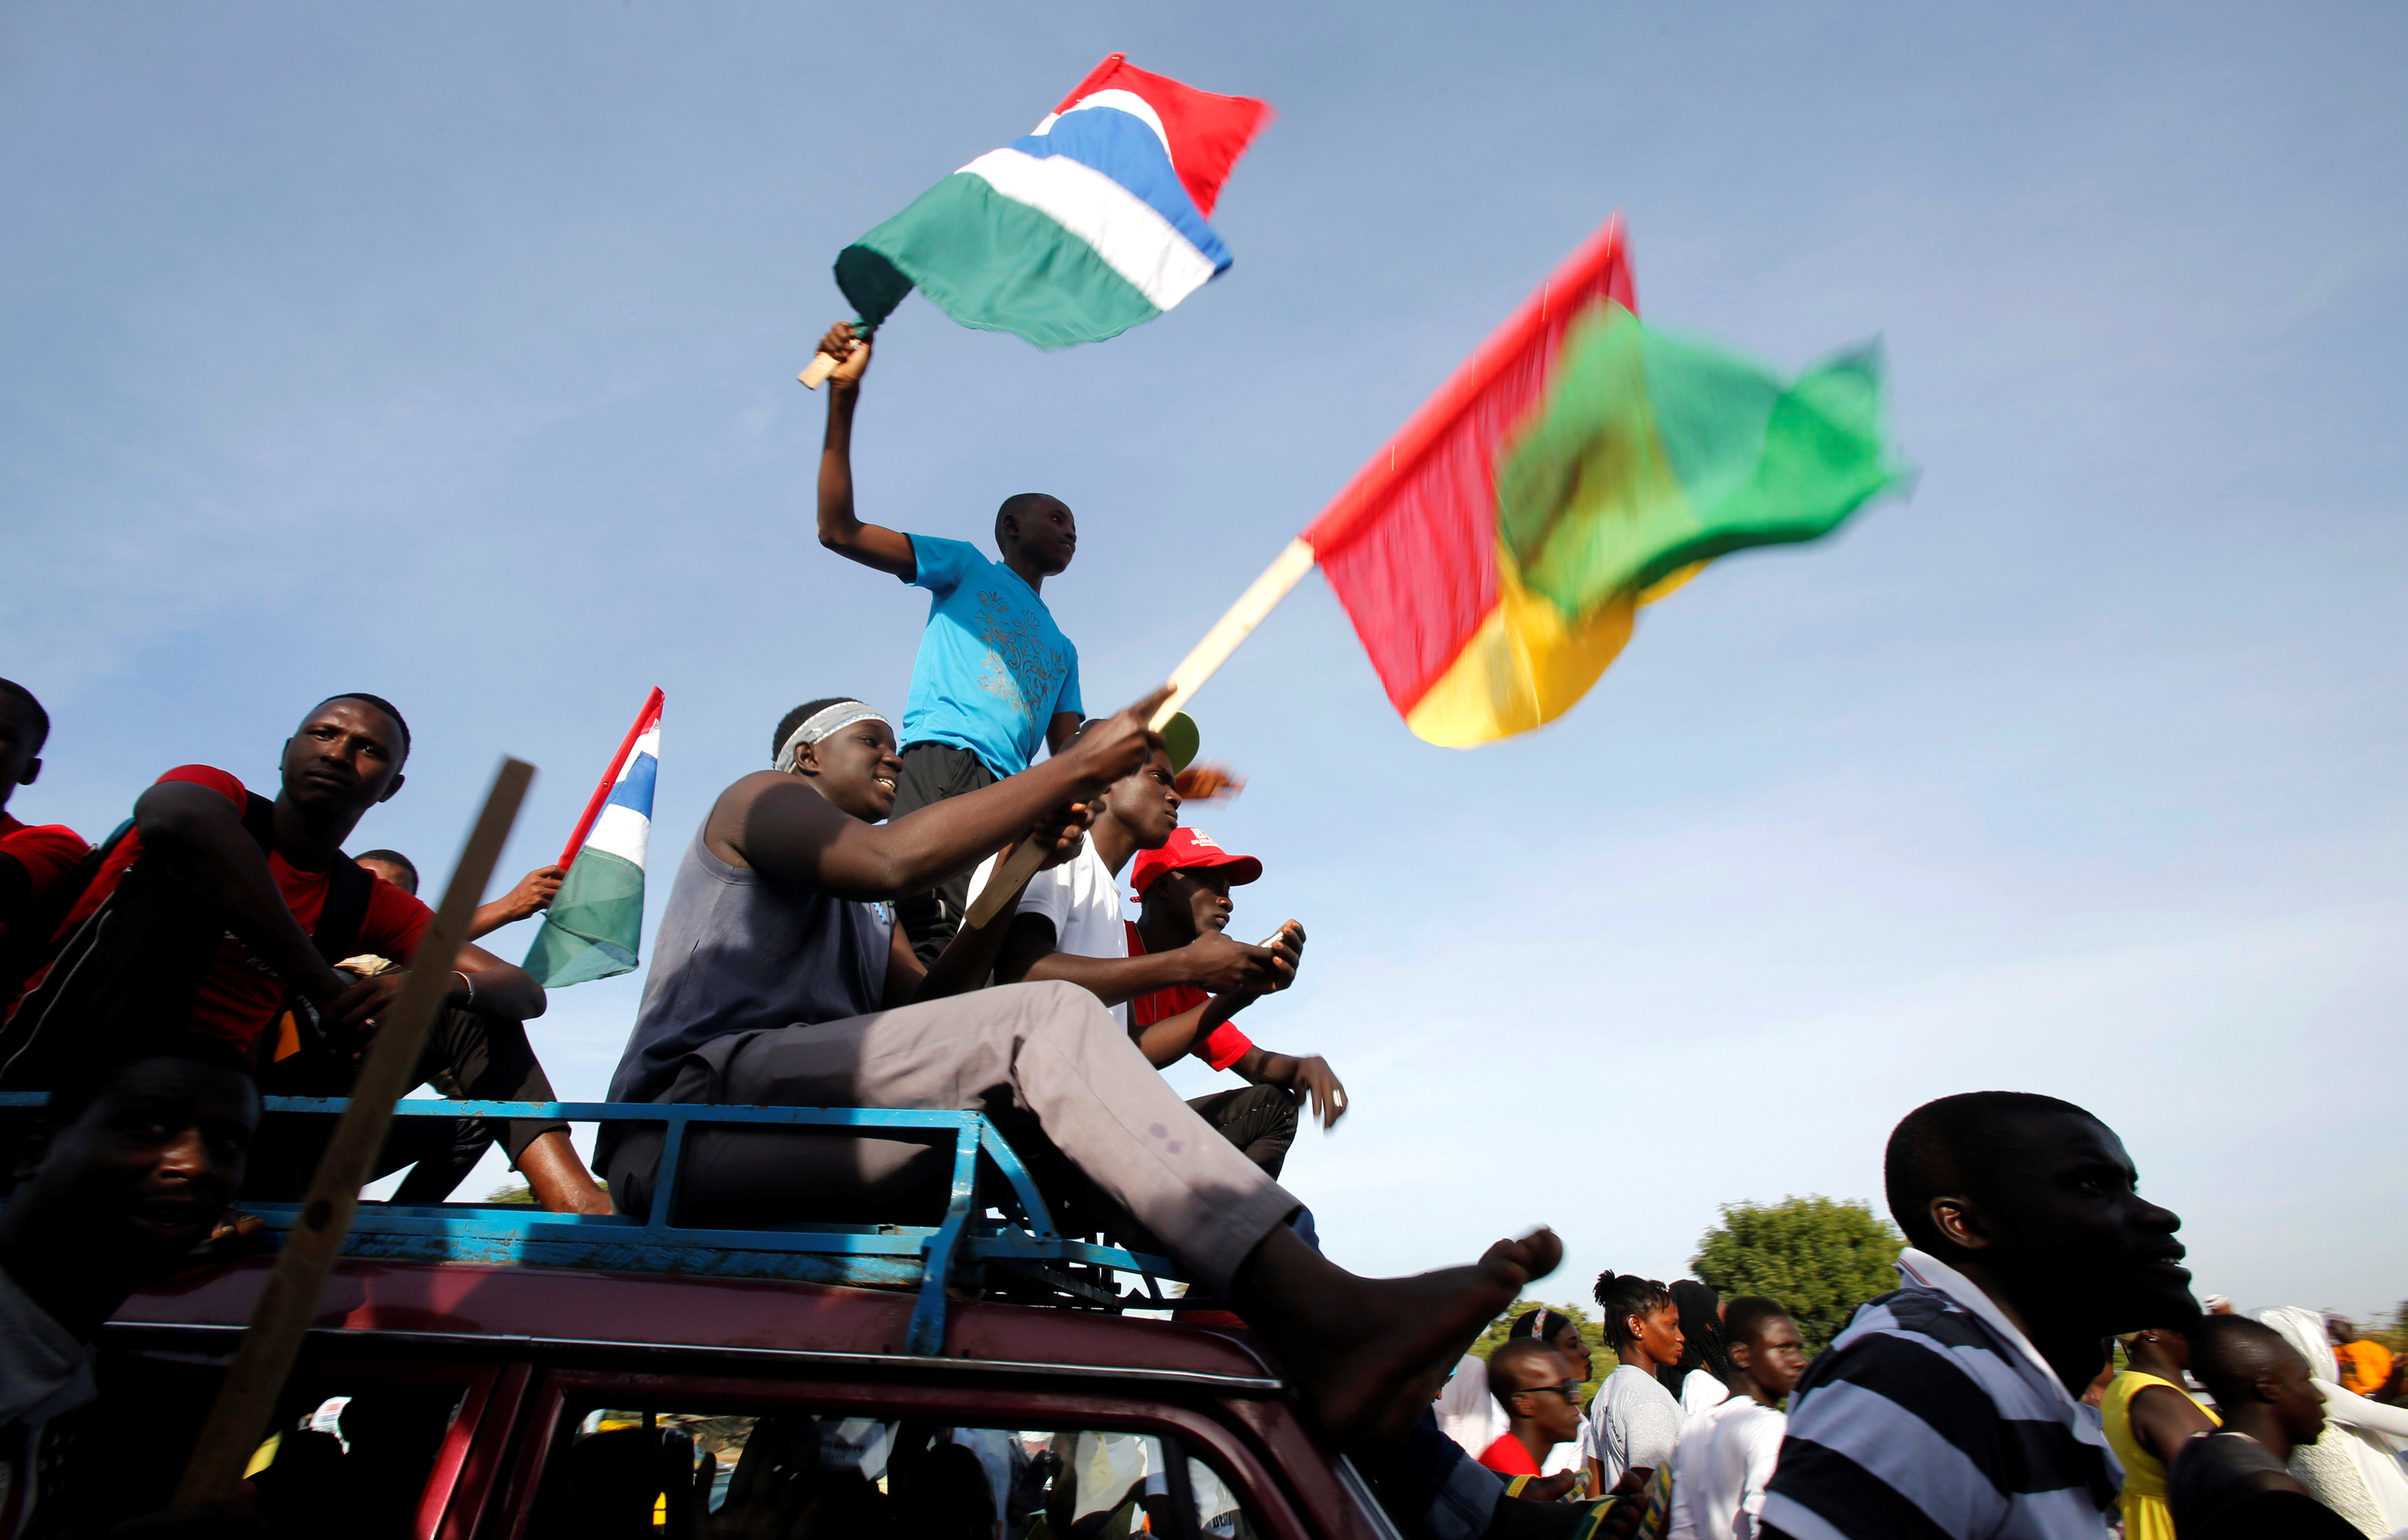 احتفالات انصار رئيس جامبيا الجديد بعودته